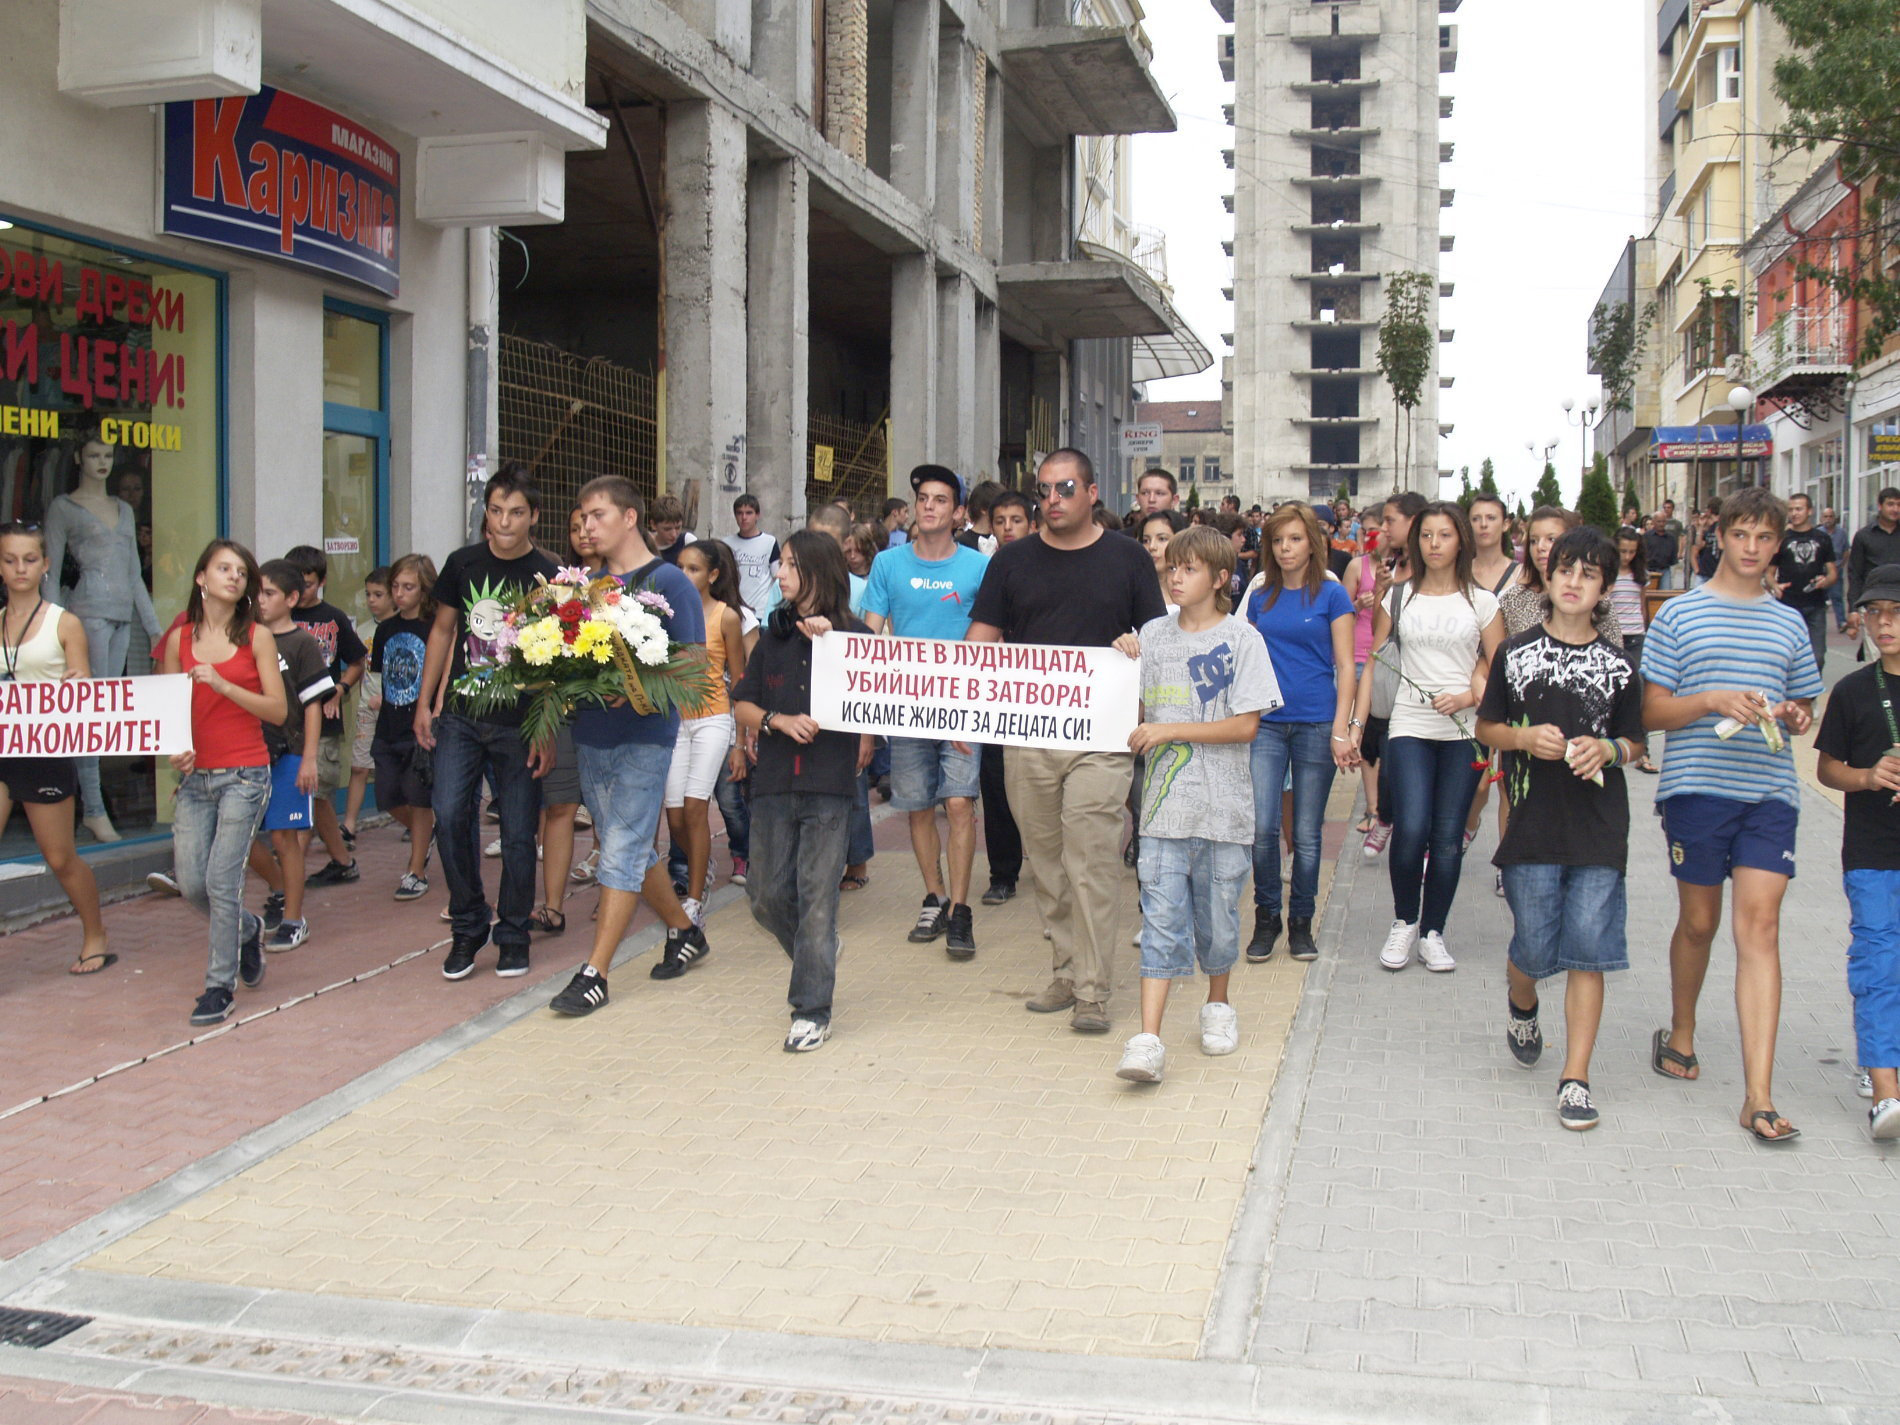 Шествието беше организирано за ден от група в една от социалните мрежи в интернет